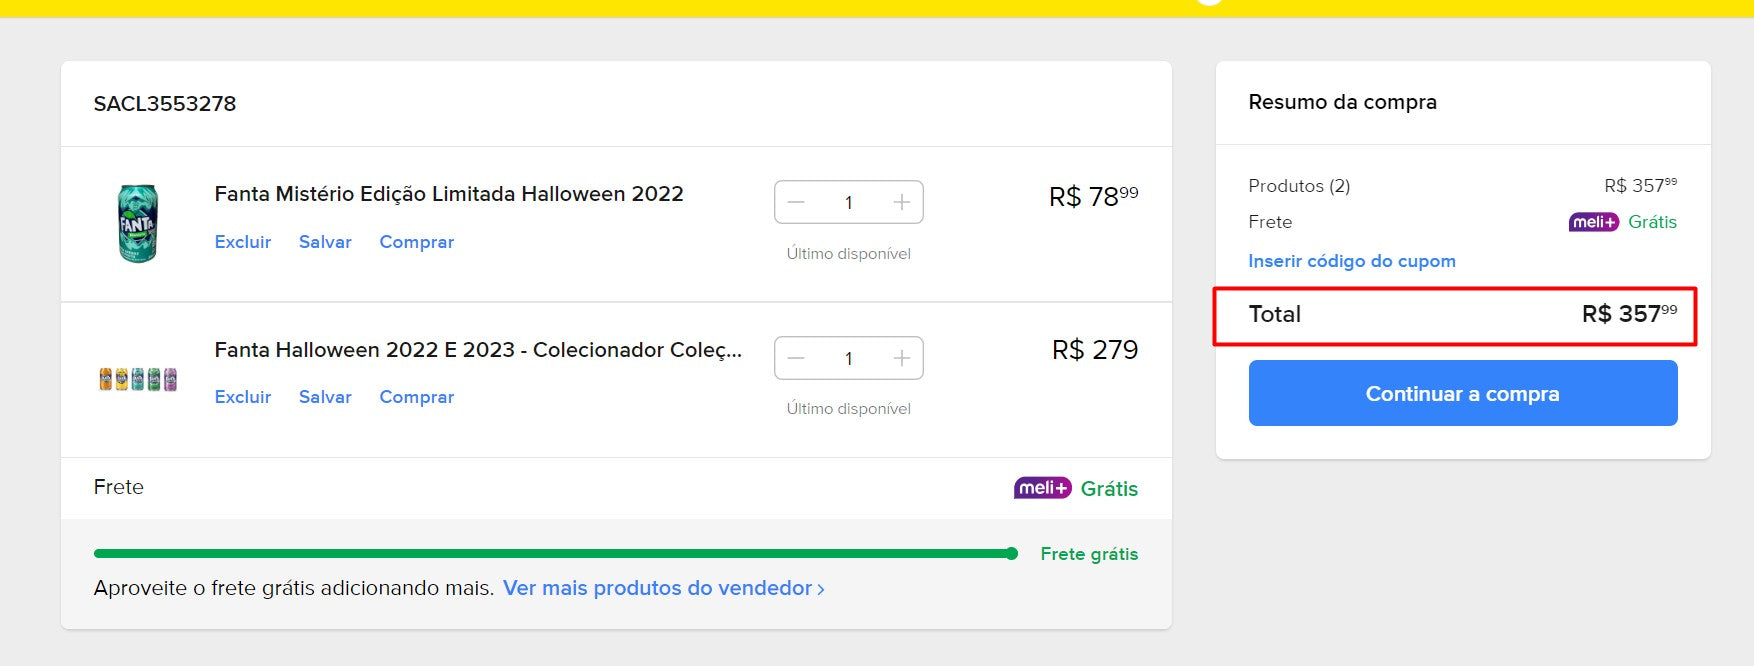 Comprador pessoal | Compre do Brasil - Coleção Mixers - 3 itens- DDP